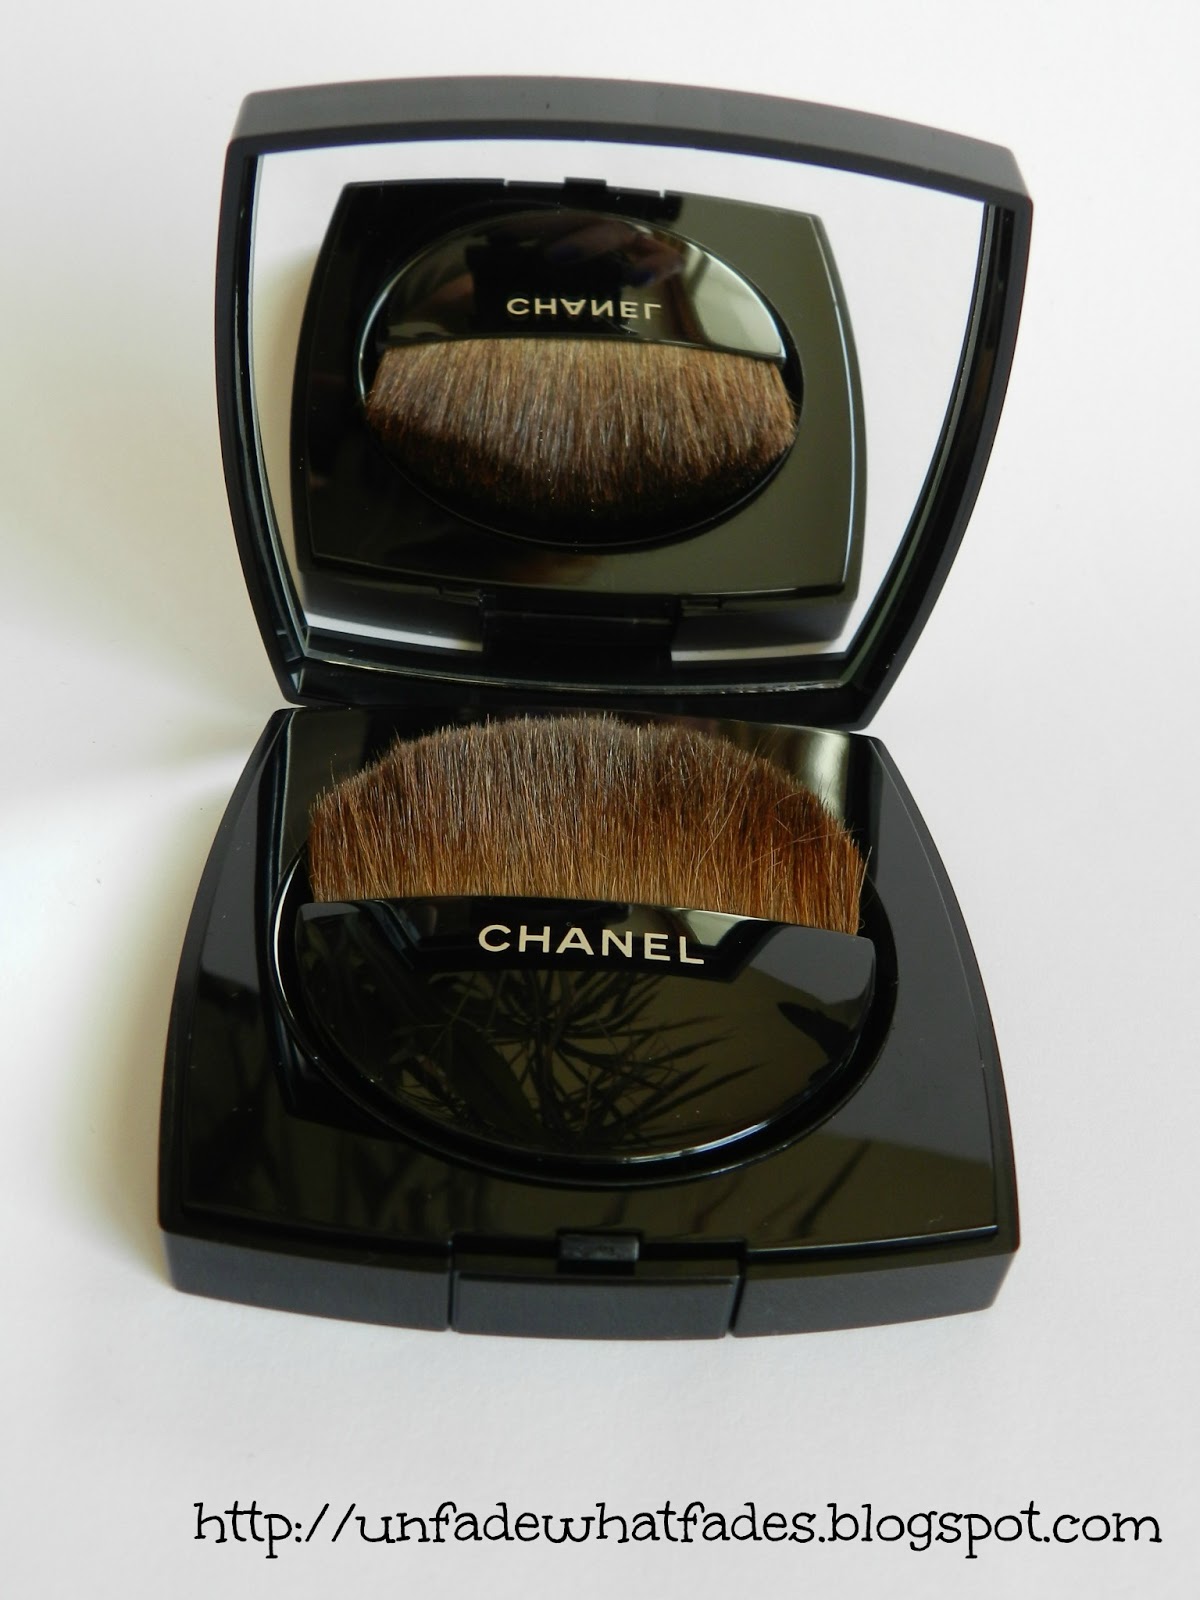 Chanel Les Beiges Healthy Glow Sheer Powder SPF 15 - 60 0.42 oz Powder 